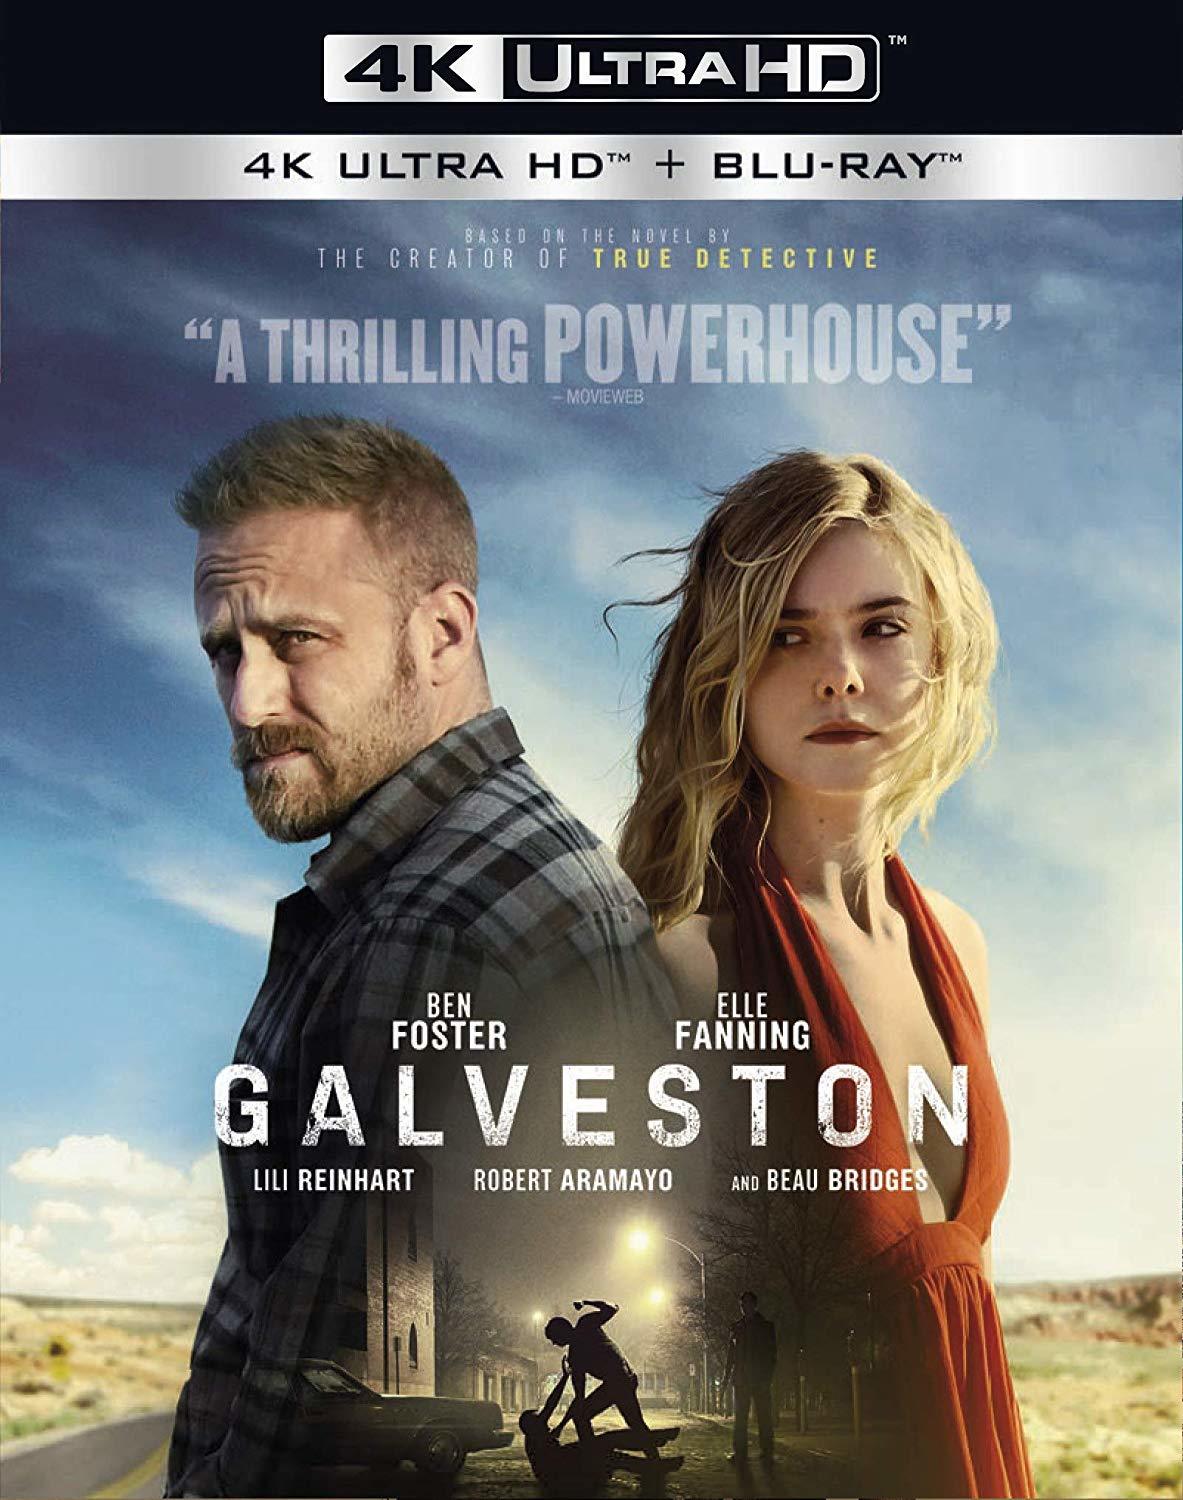 加尔维斯顿 [DIY简繁英双语字幕] Galveston 2018 2160p UHD Blu-ray HEVC DTS-HD MA 5.1-AA@OurBits     [50.42 GB]-1.jpg